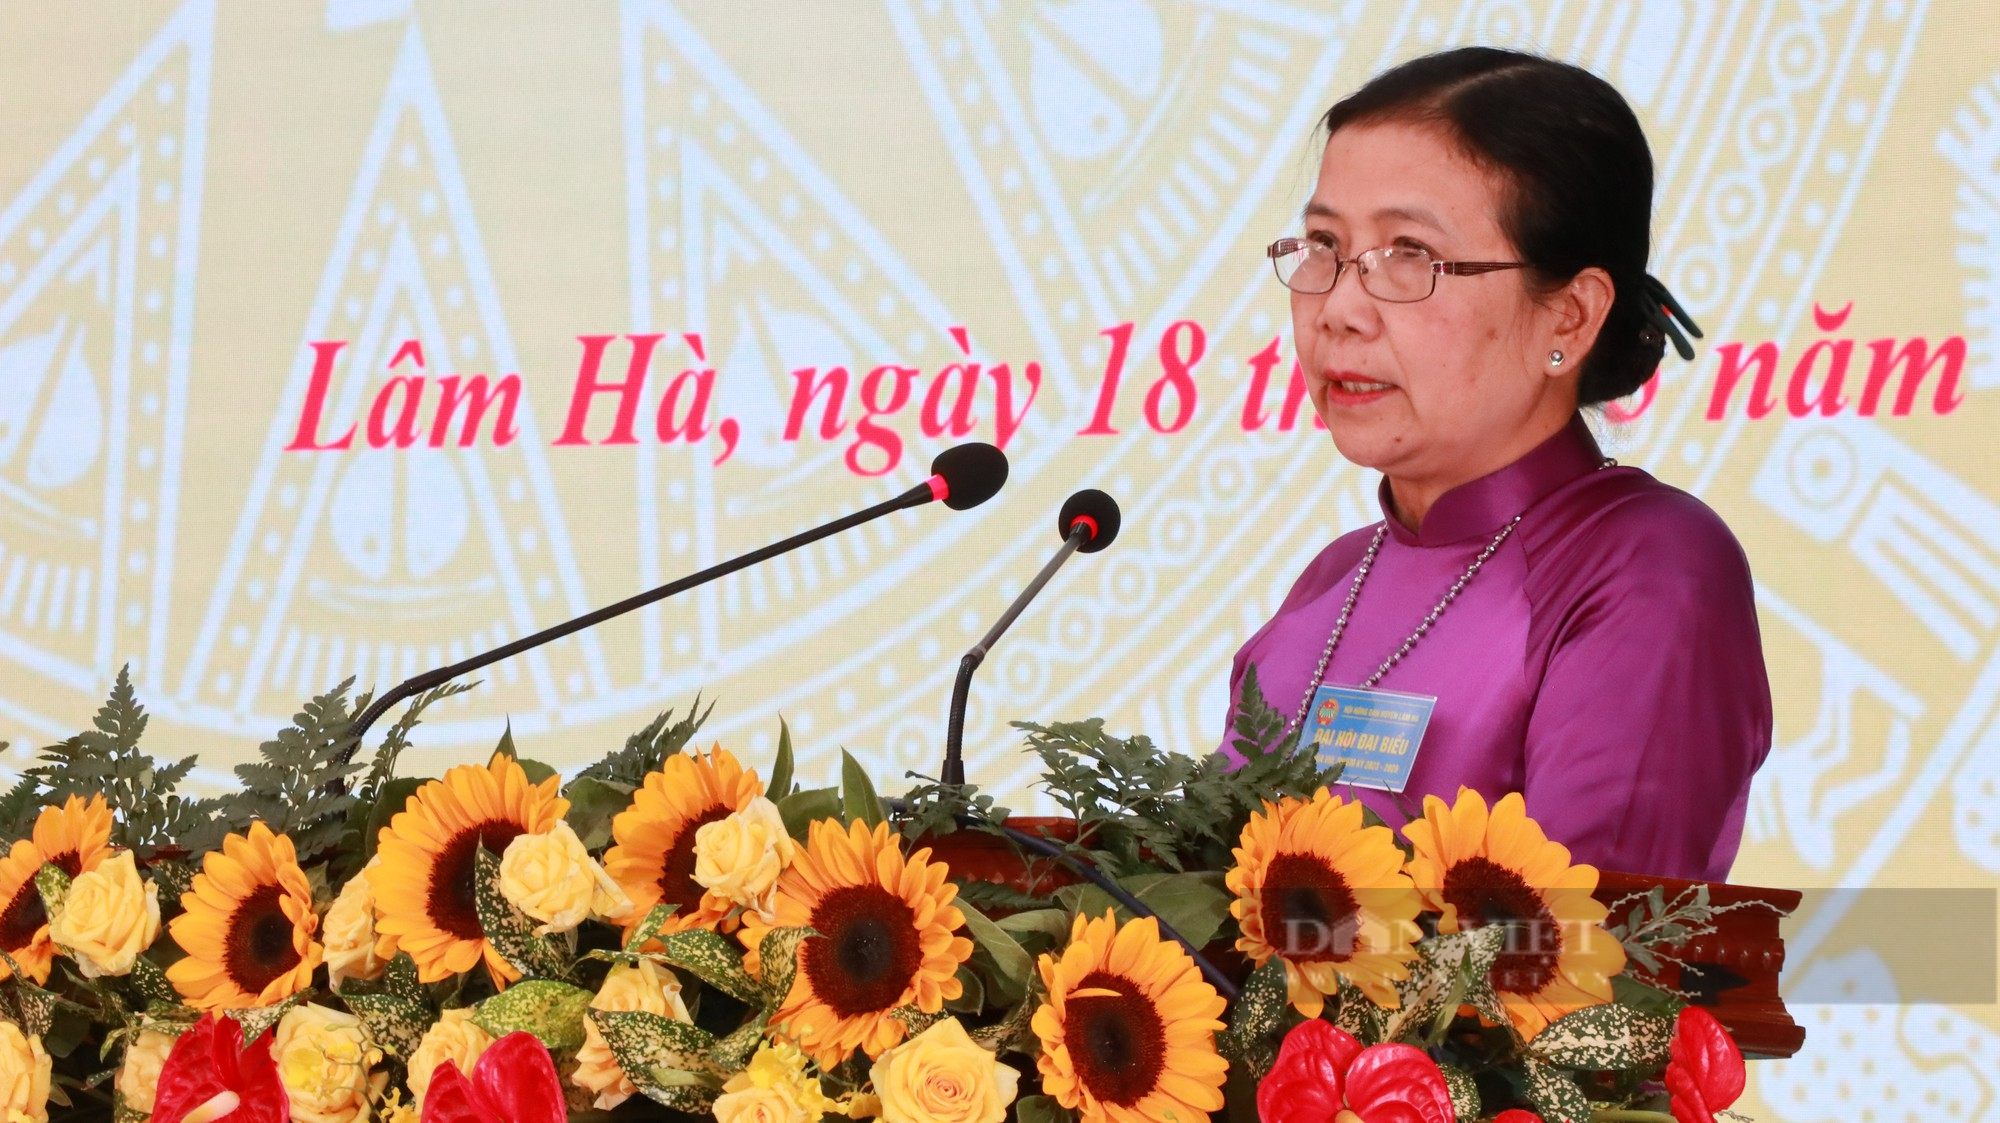 Huyện đầu tiên của tỉnh Lâm Đồng tổ chức Đại hội đại biểu Hội Nông dân, nữ chủ tịch tái đắc cử - Ảnh 5.